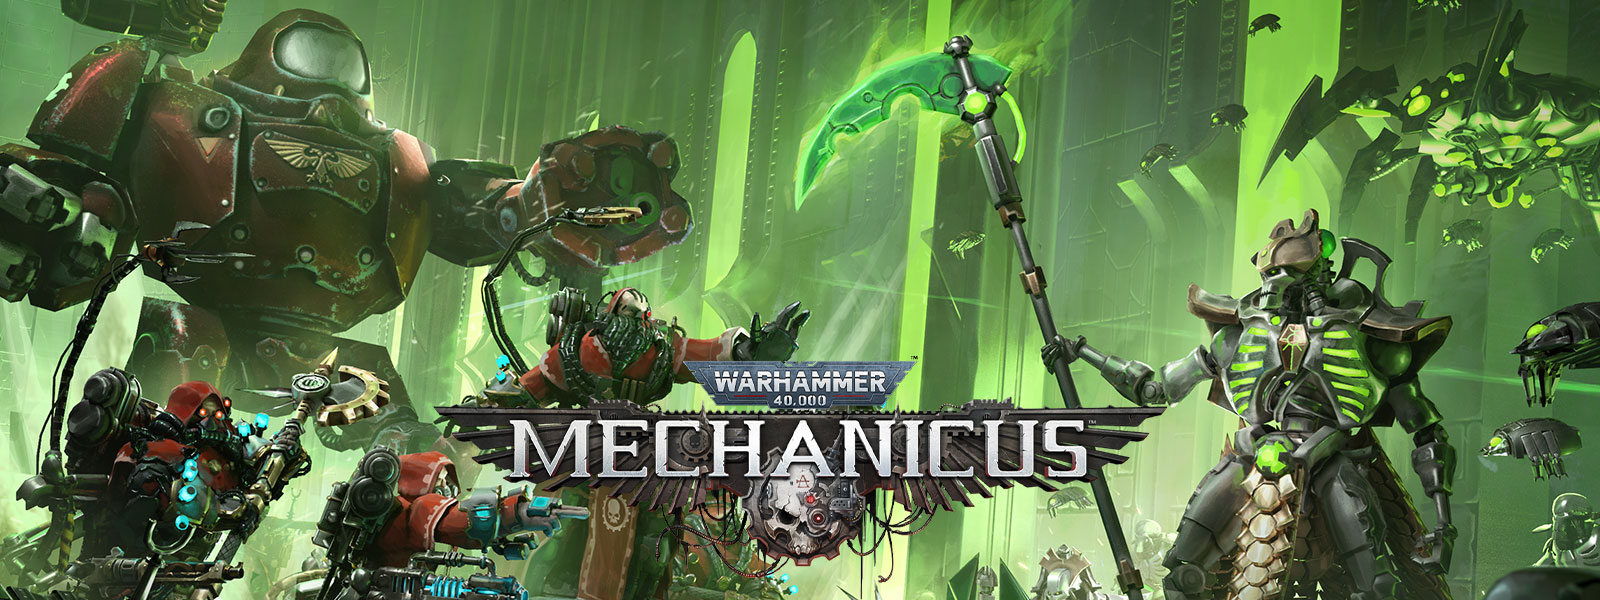 Warhammer 40,000: Mechanicus, Csúcstechnikás csapatok összecsapásra készülnek.